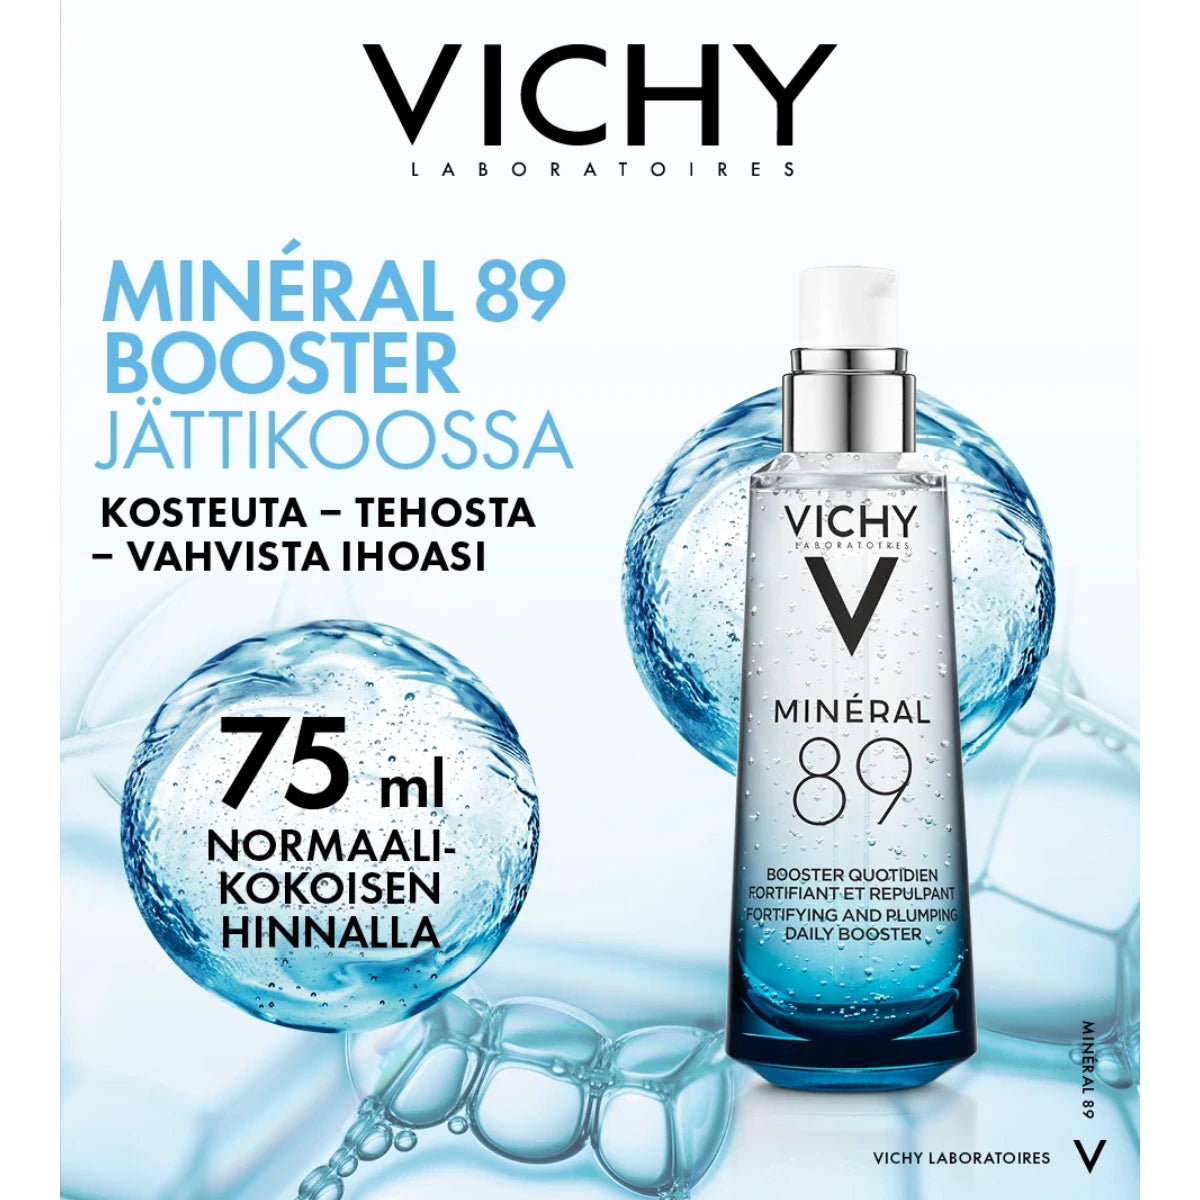 VICHY Mineral 89 tiiviste kaikille ihotyypeille, hajusteeton kampanjapakkaus 75 ml normaalikokoisen hinnalla